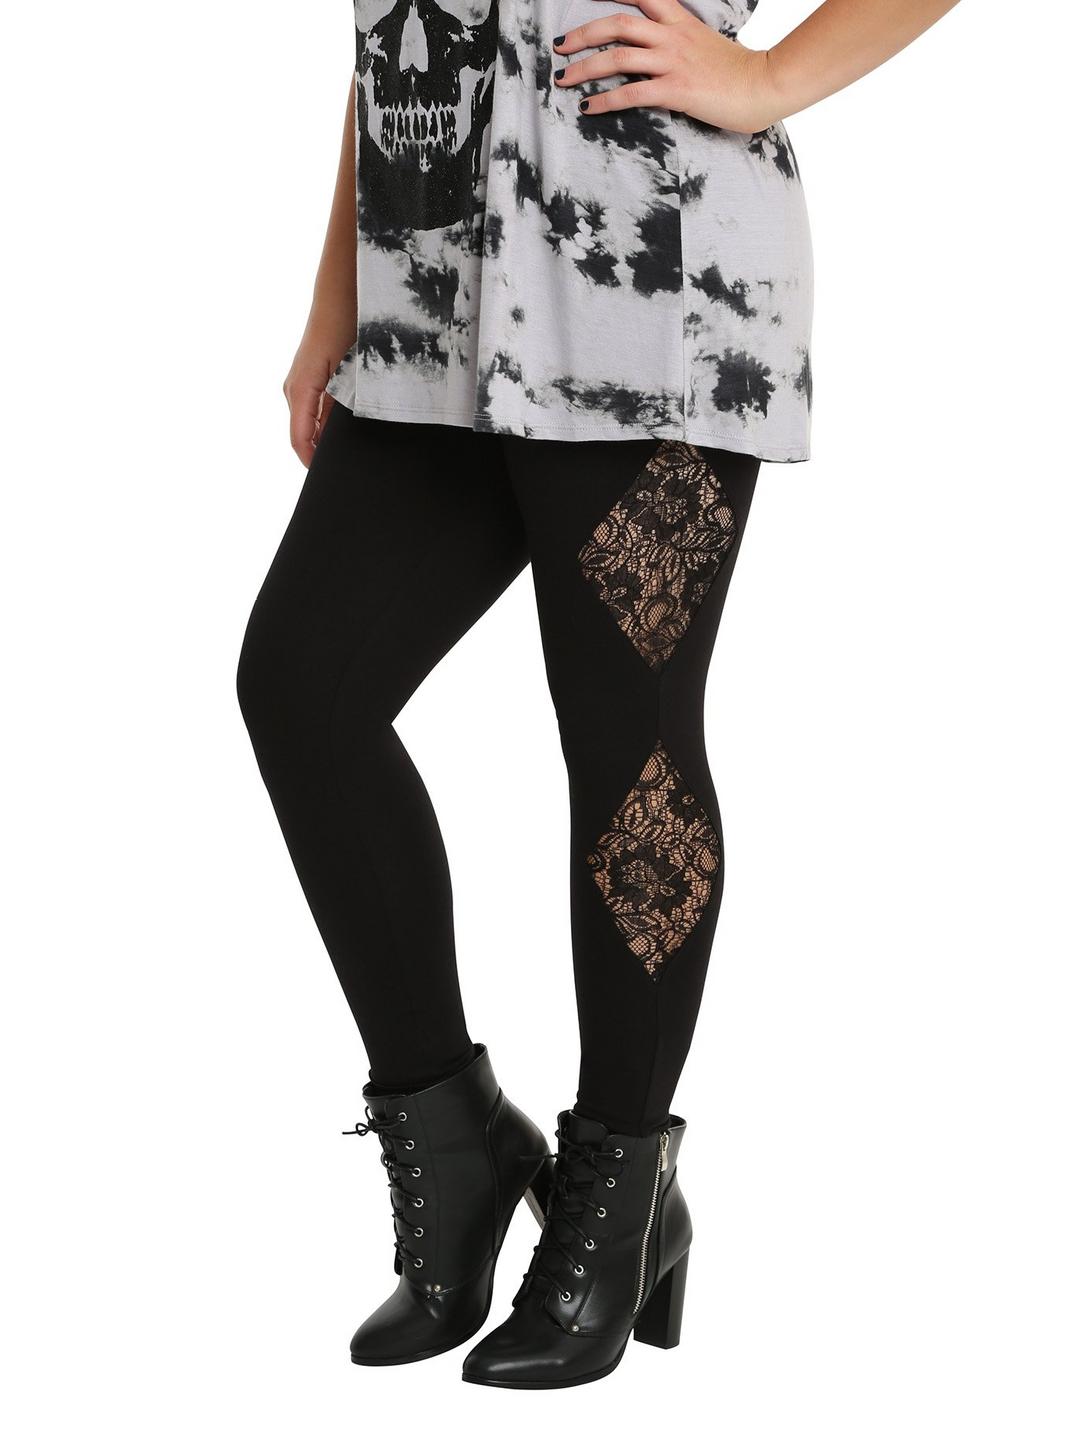 Blackheart Black Lace Leggings Plus Size, BLACK, hi-res